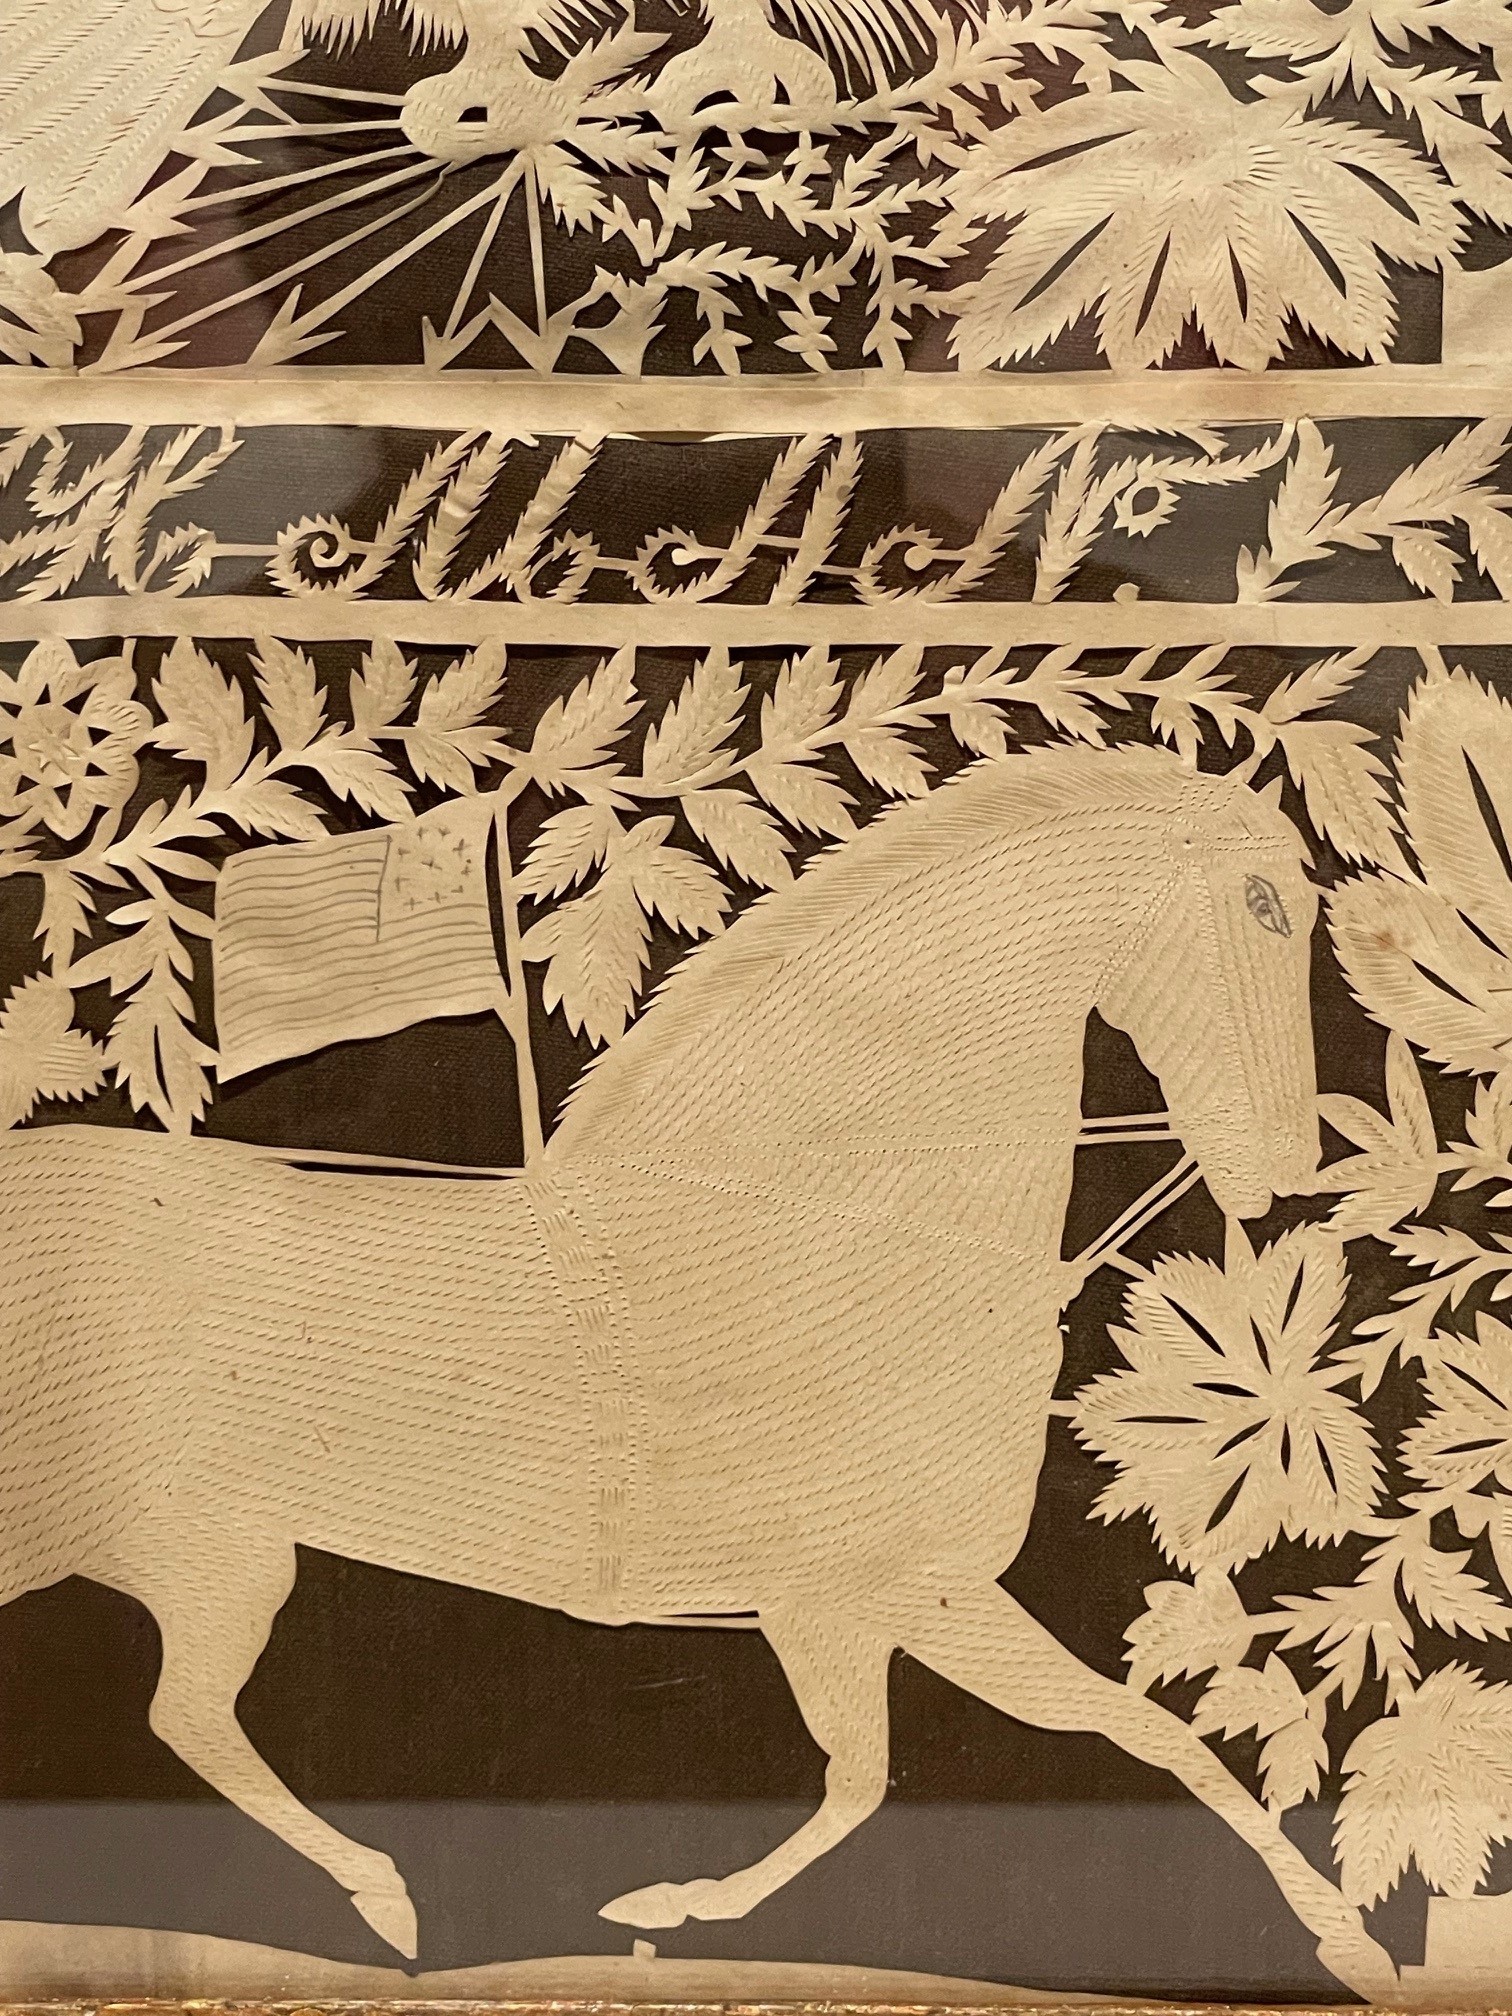 American antique animal papercut rel=